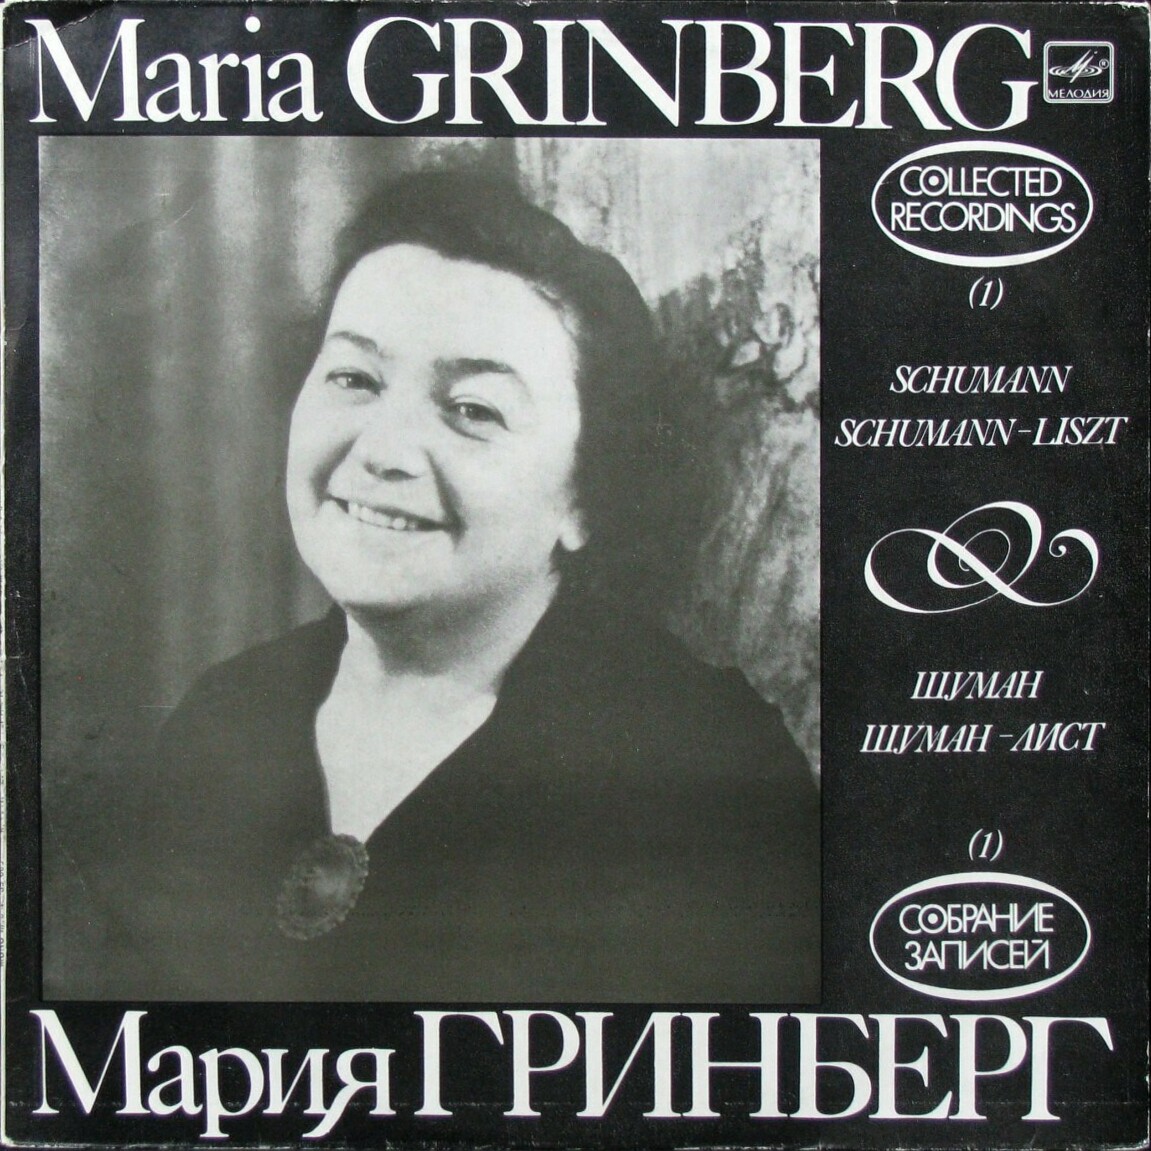 Мария ГРИНБЕРГ (ф-но). Собрание записей (1)